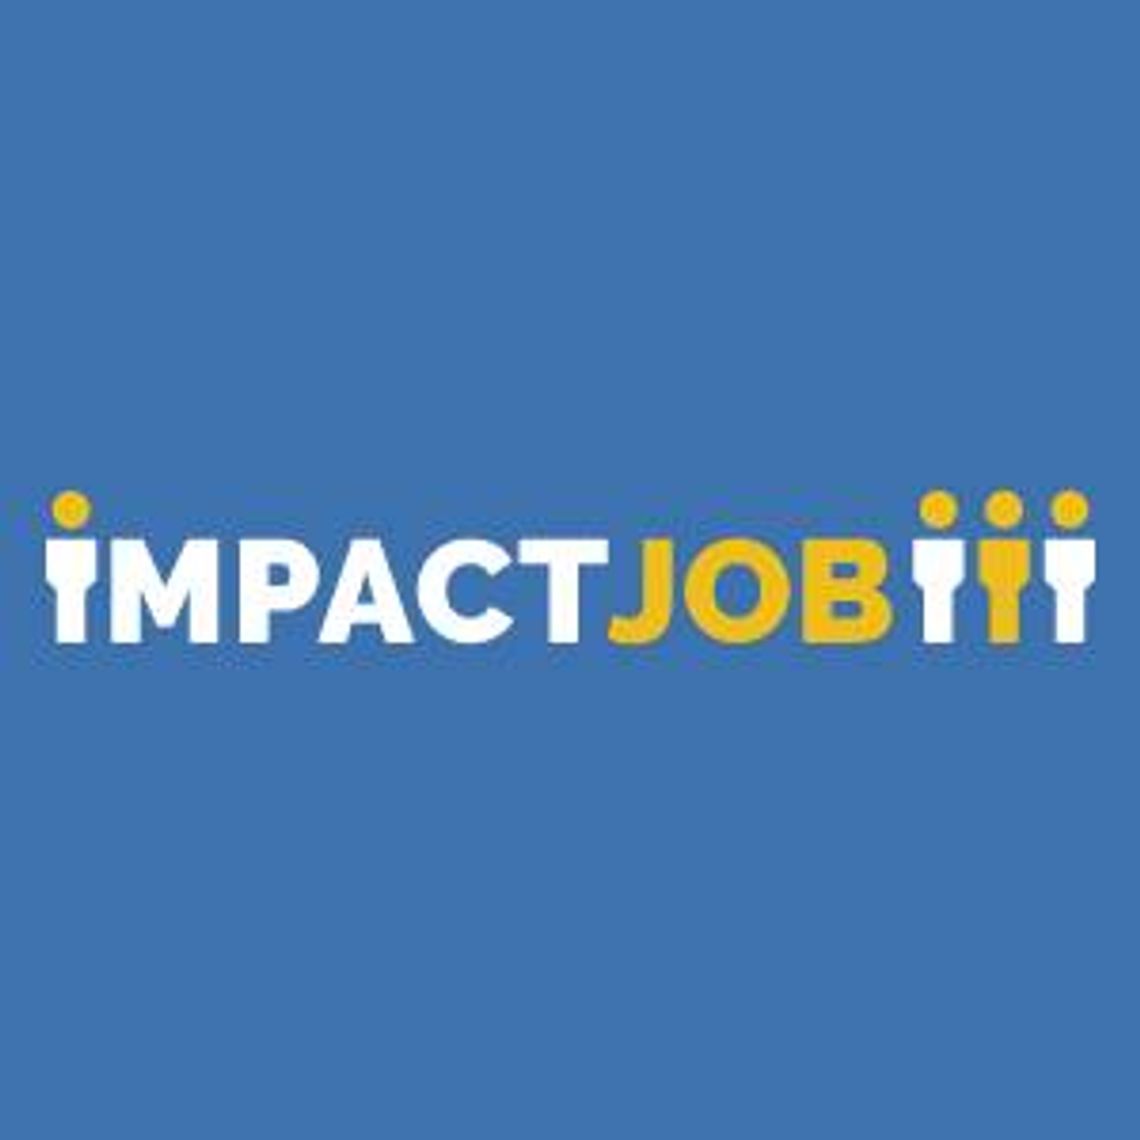 Oferty pracy Niemcy - ImpactJob